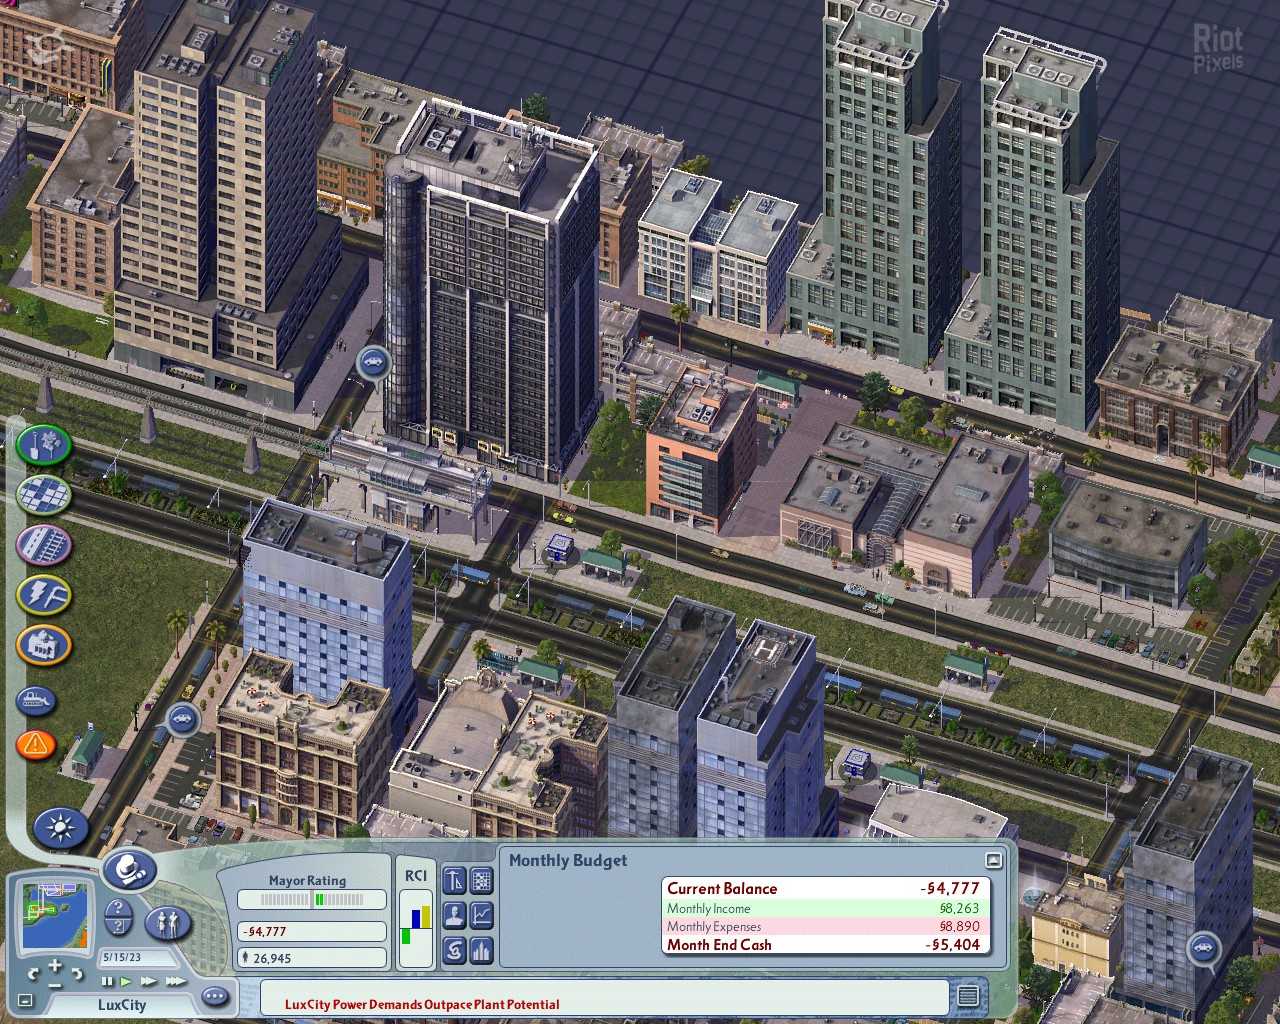 До появления The Sims у нас была SimCity Если вы по-прежнему помните и цените эту игру, то непременно обратите внимание на следующие тайтлы